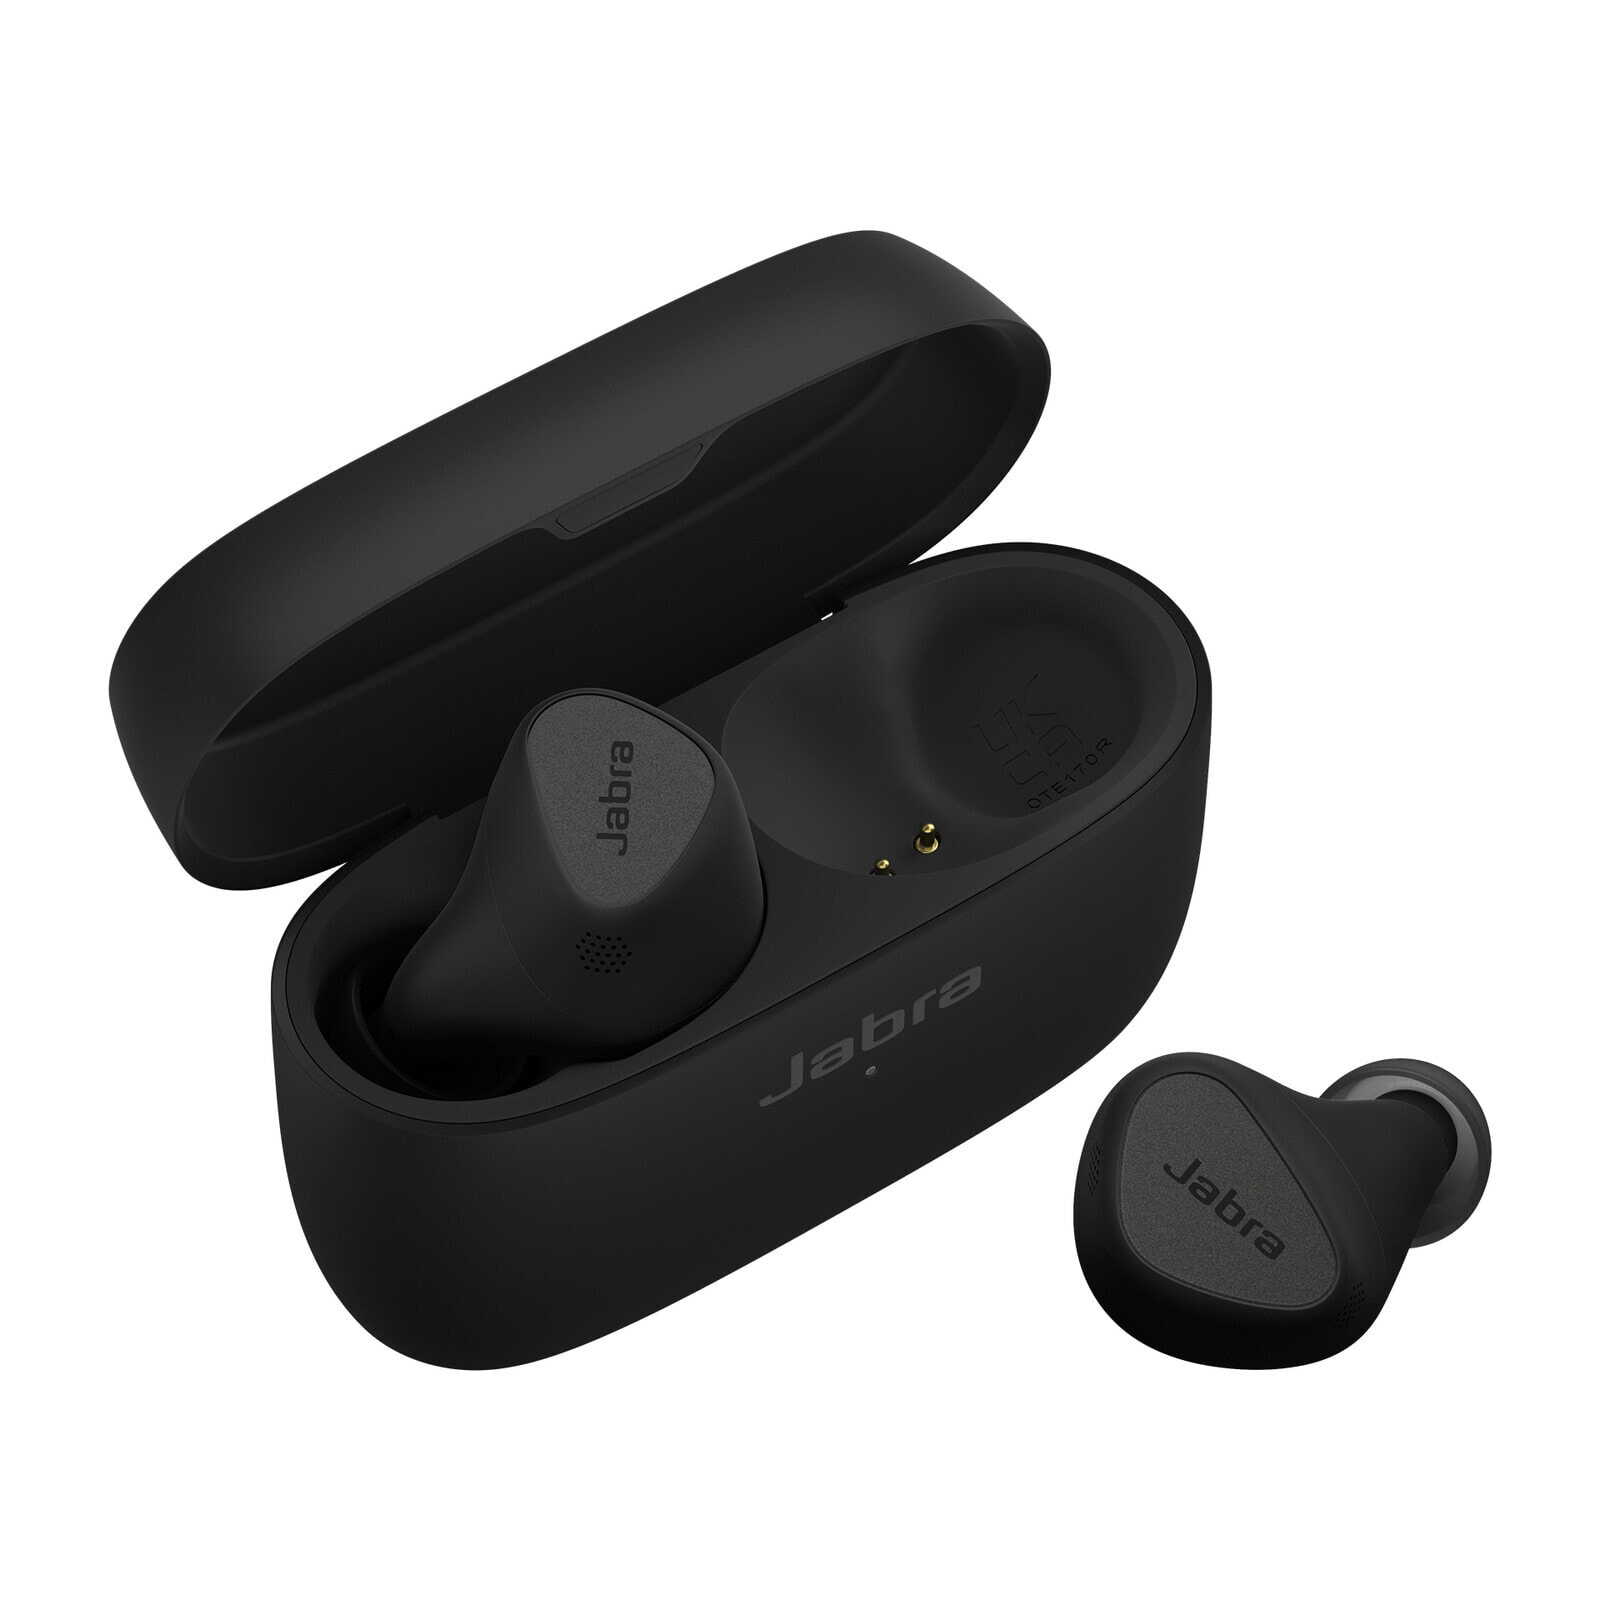 Jabra Elite 5 Гарнитура True Wireless Stereo (TWS) Вкладыши Calls/Music Bluetooth Черный 100-99181000-60